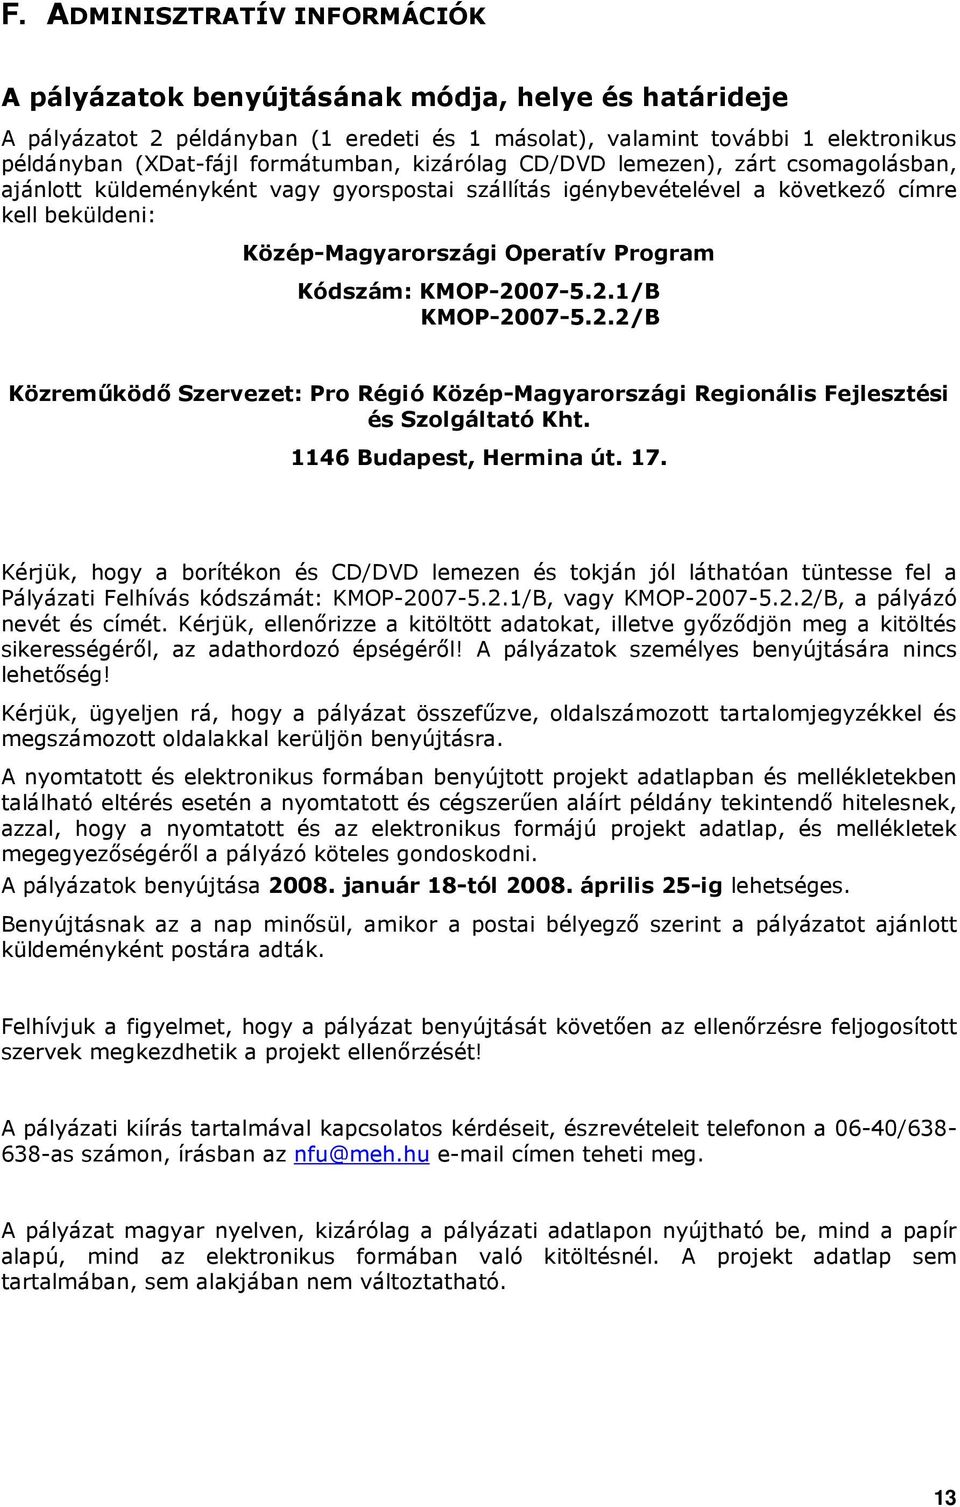 Kódszám: KMOP-2007-5.2.1/B KMOP-2007-5.2.2/B Közremőködı Szervezet: Pro Régió Közép-Magyarországi Regionális Fejlesztési és Szolgáltató Kht. 1146 Budapest, Hermina út. 17.